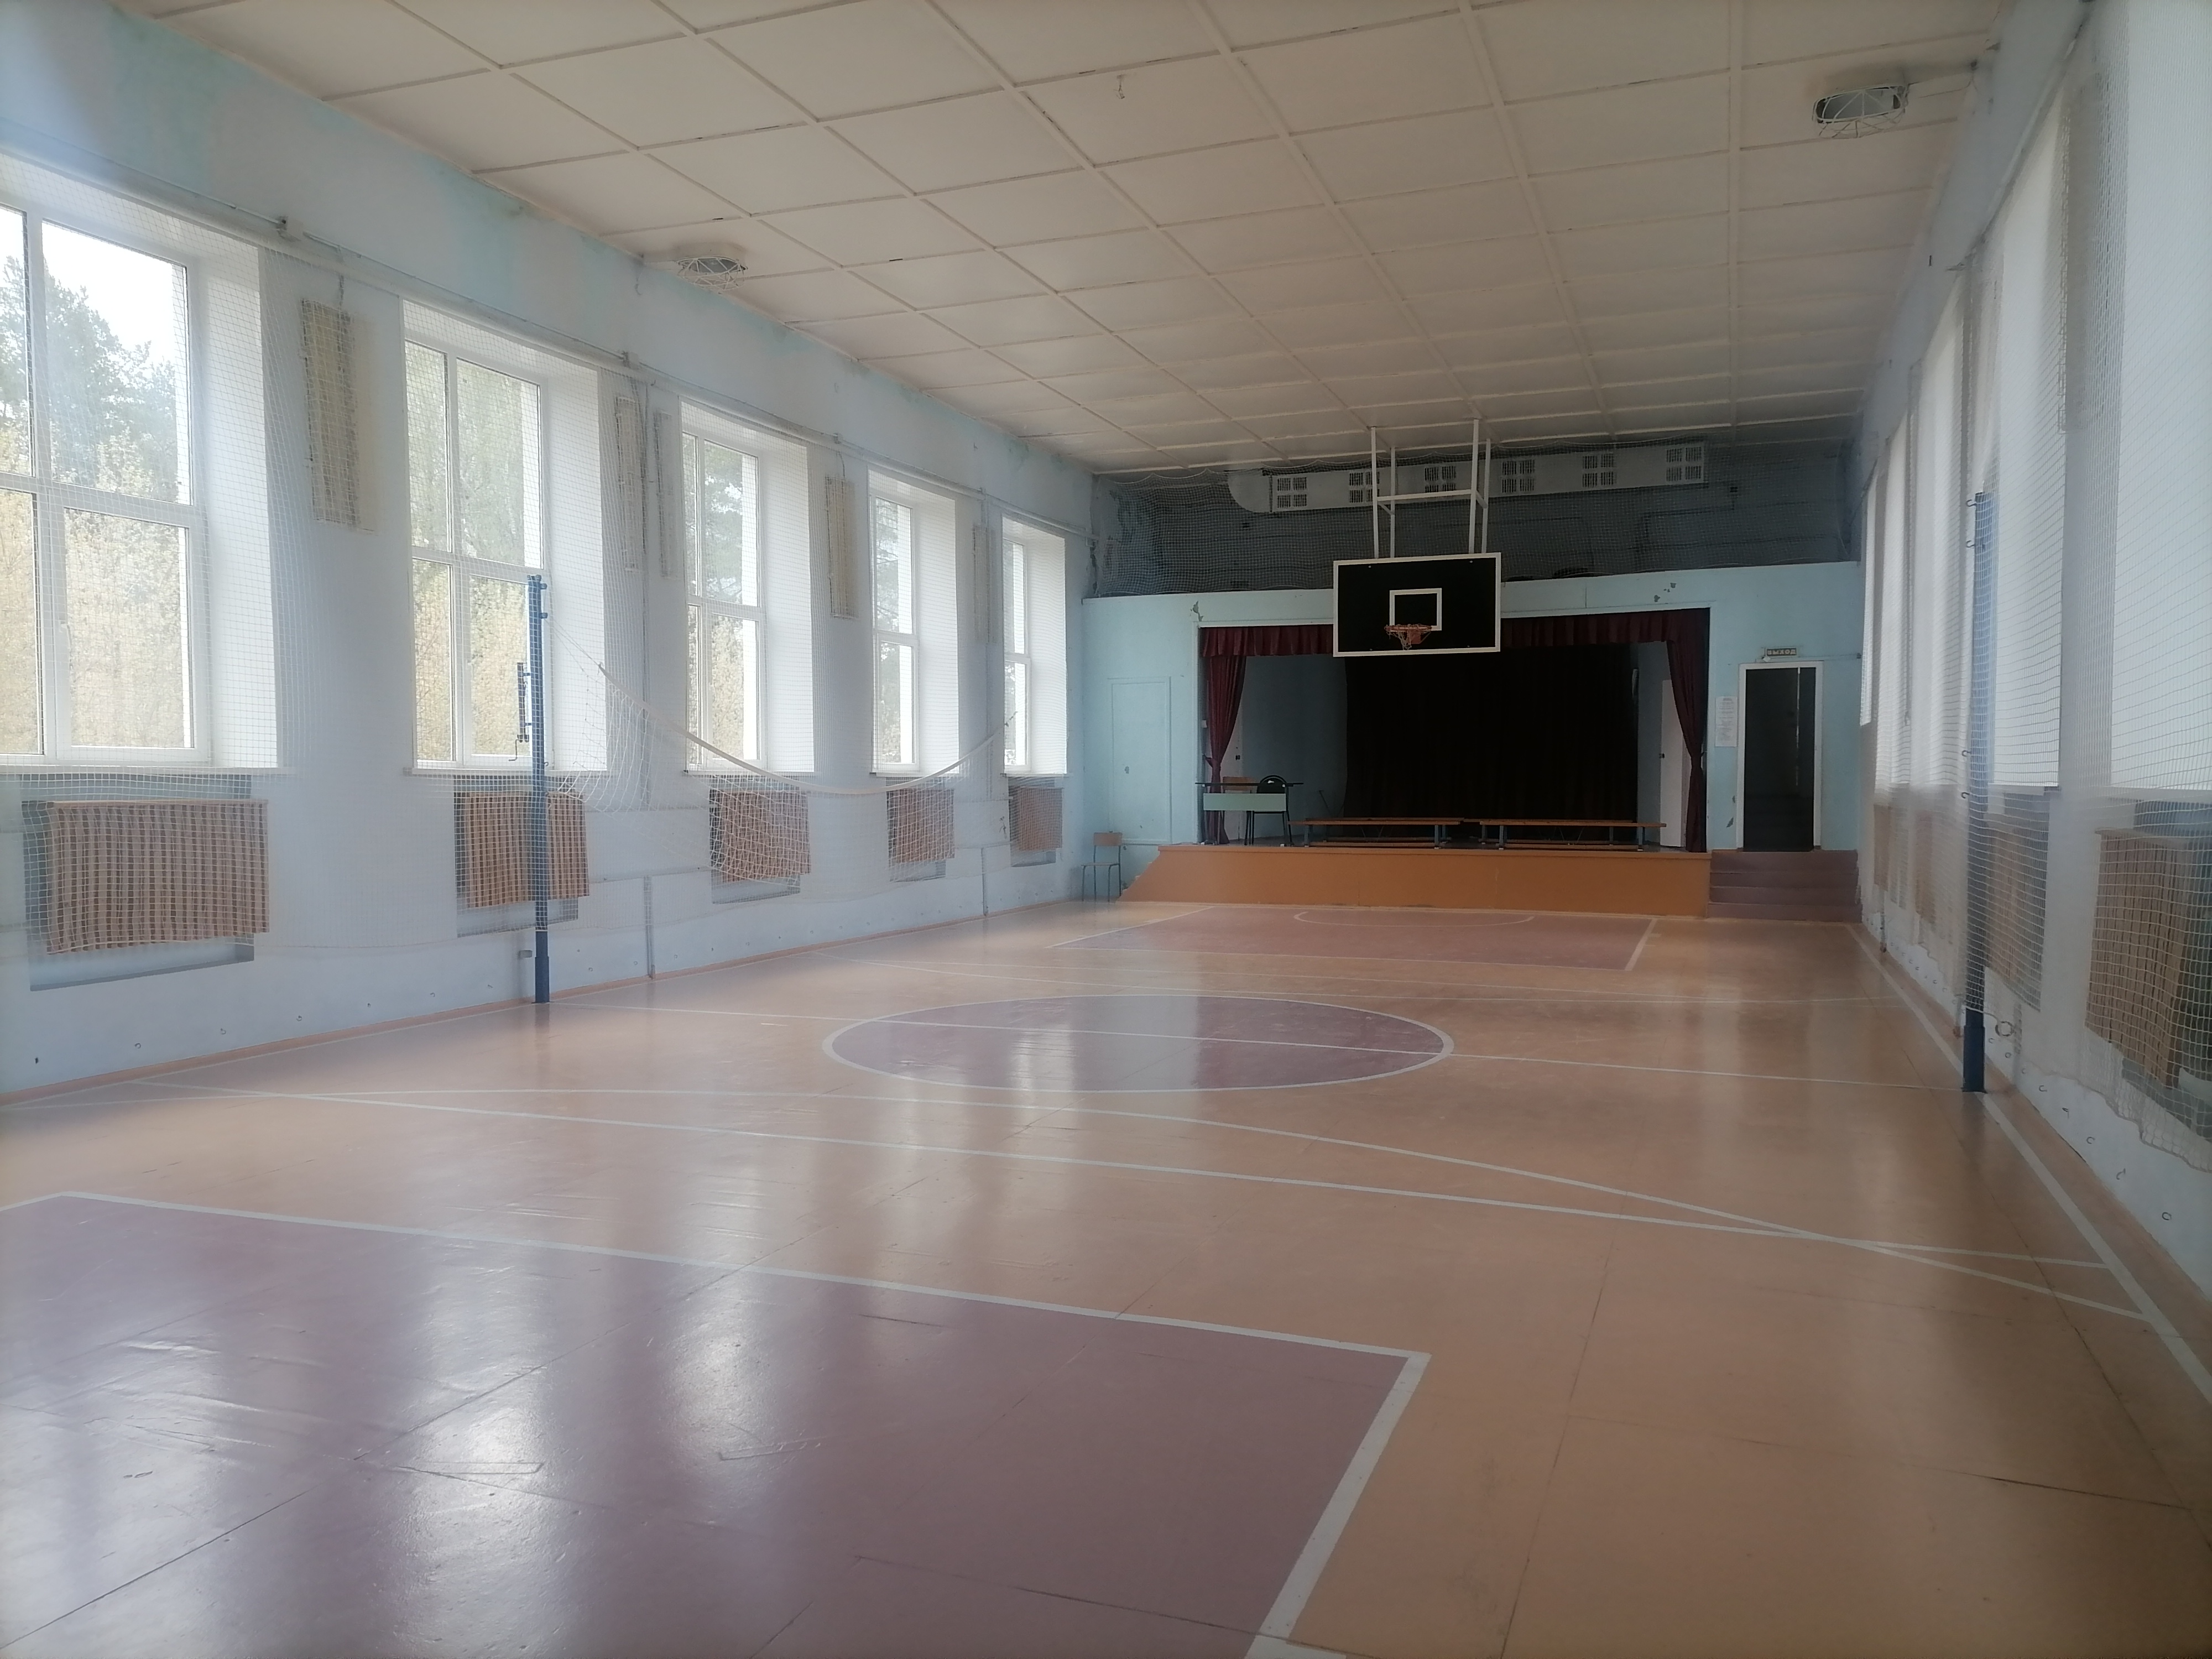 В спортзале проводятся занятия физкультурой и различные культурные и праздничные мероприятия